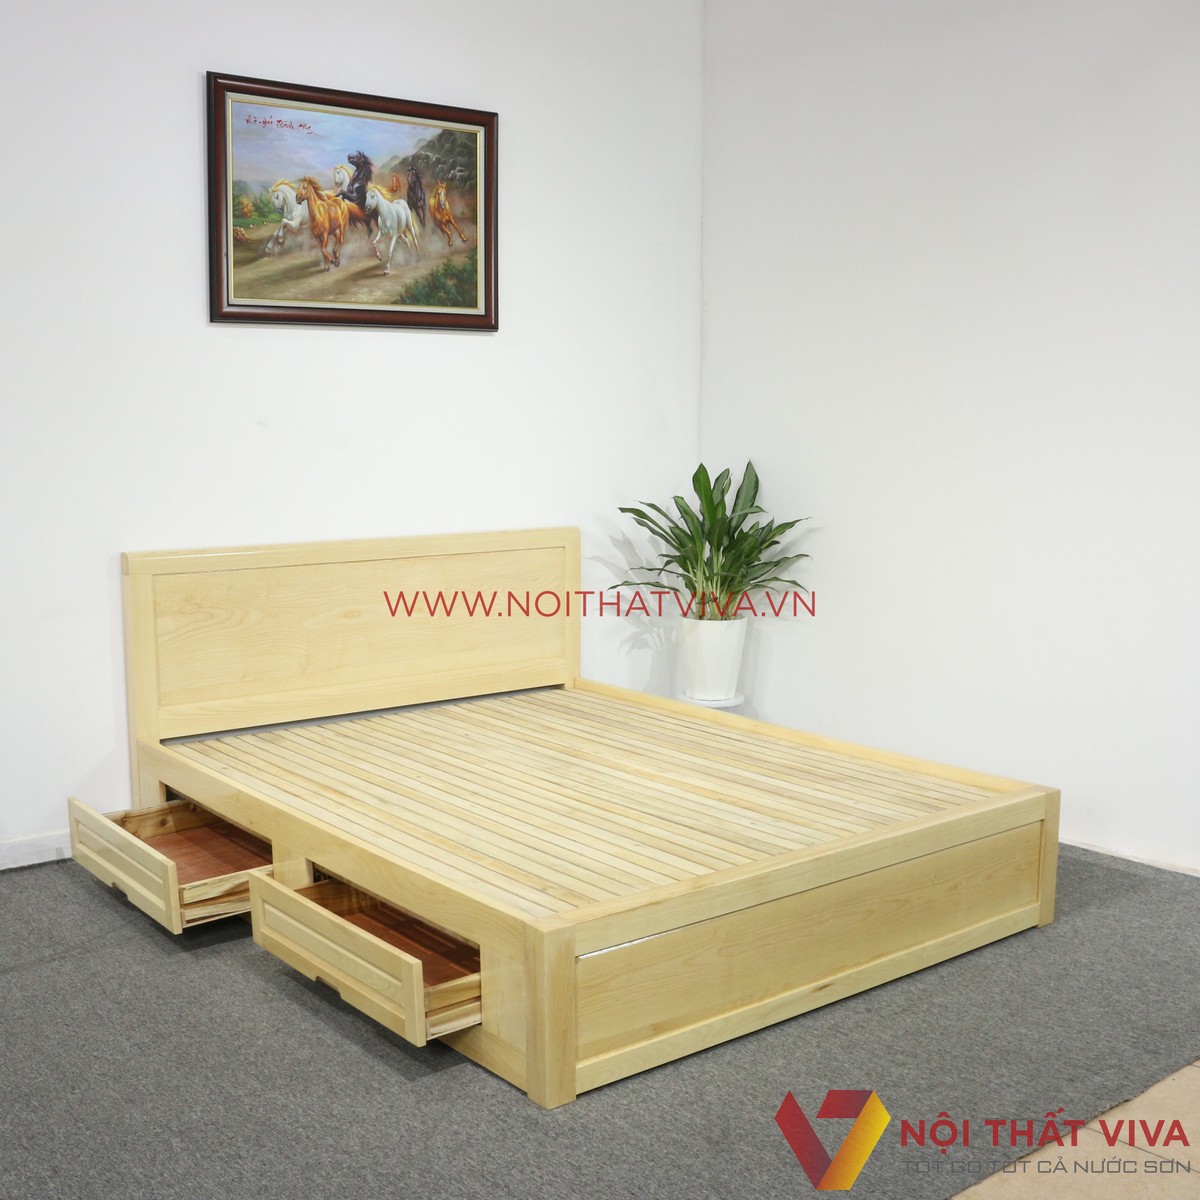 Chi tiết về giường ngủ 1m8x2m gỗ sồi – các mẫu giường đẹp